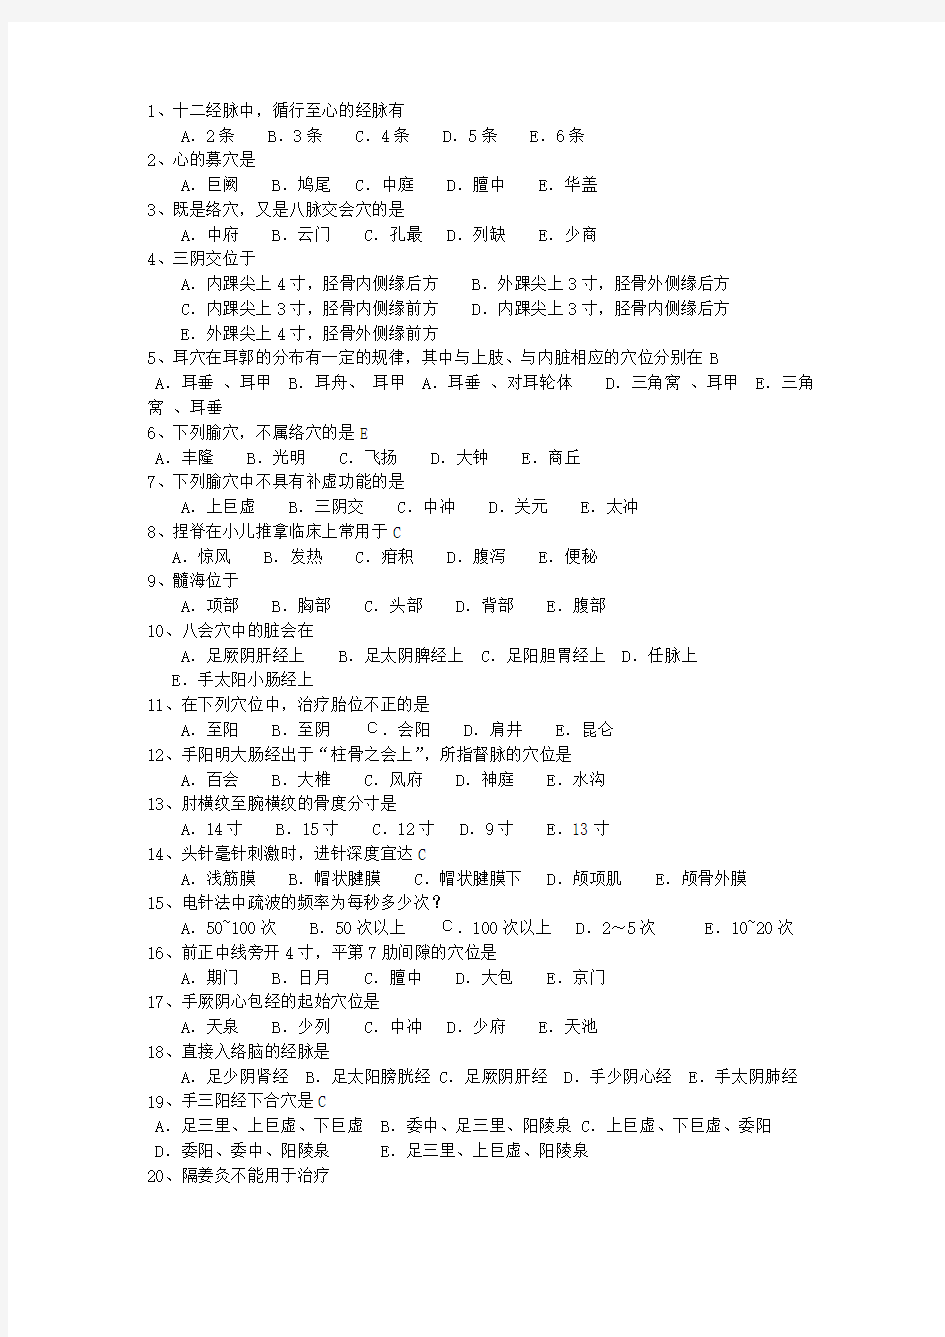 2015年江西省针灸推拿专业考博考试答题技巧